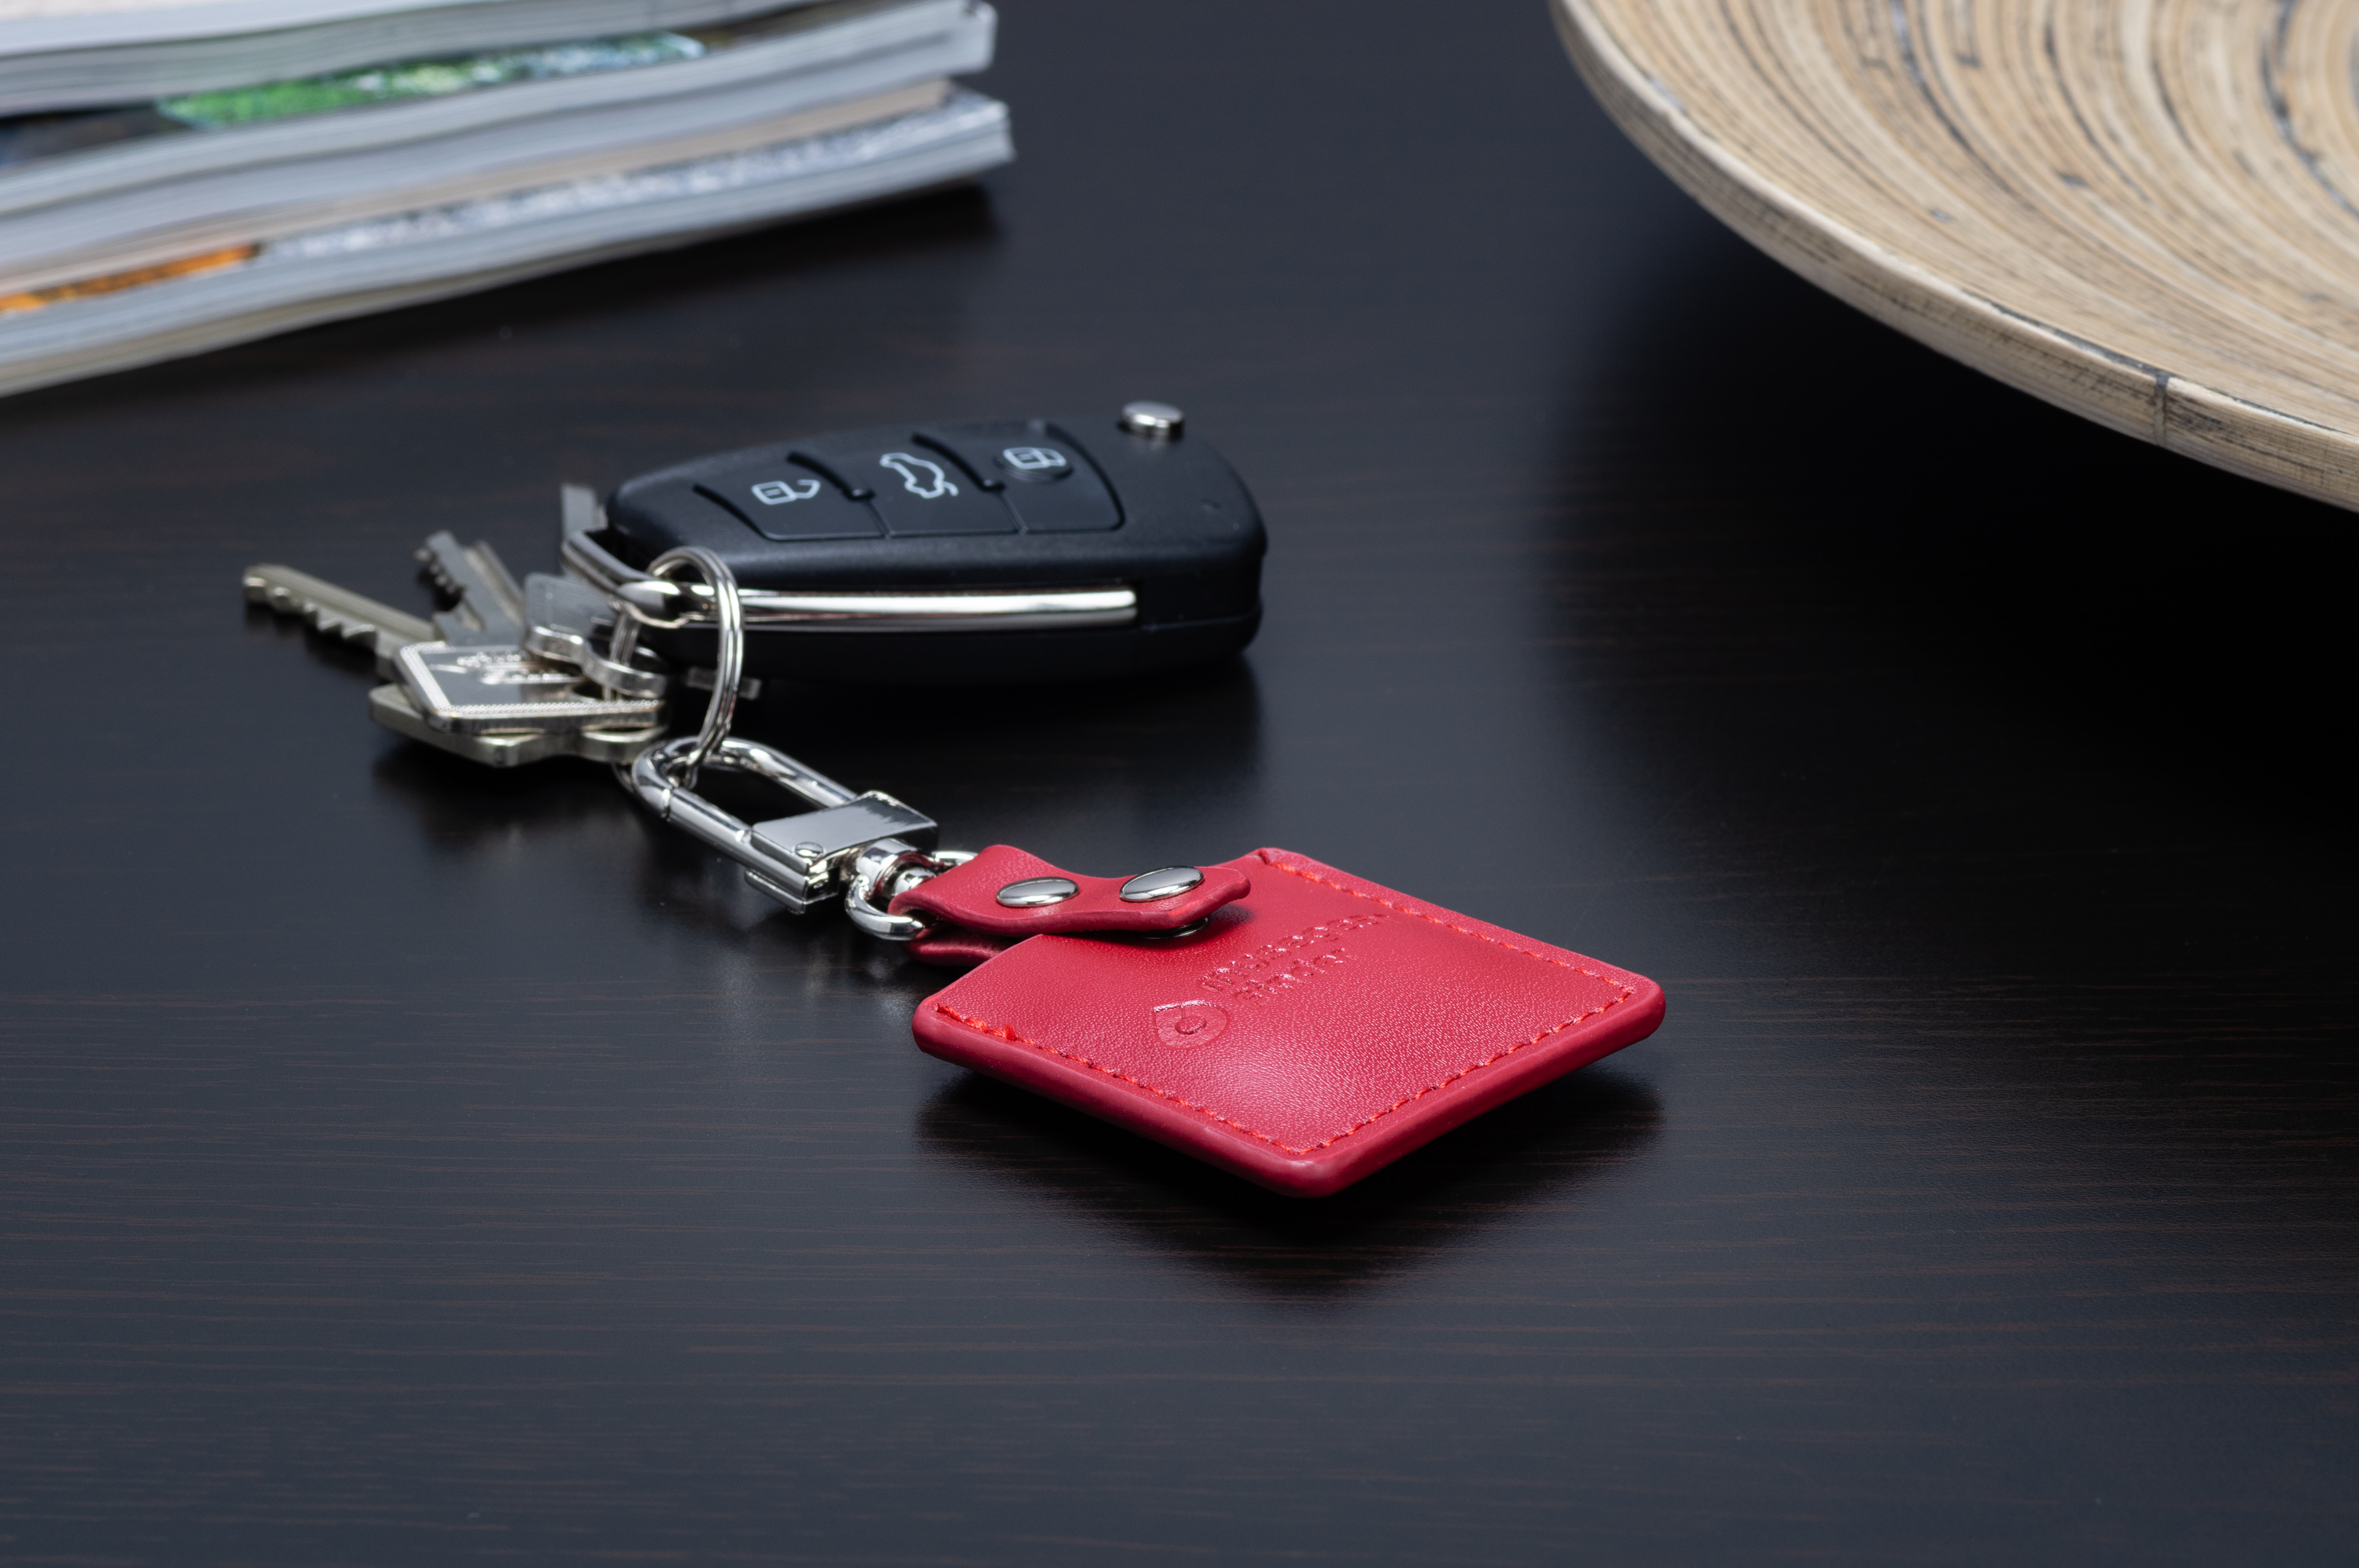 MUSEGEAR Schlüsselfinder mit Bluetooth Deutschland App Bluetooth aus Schlüsselfinder